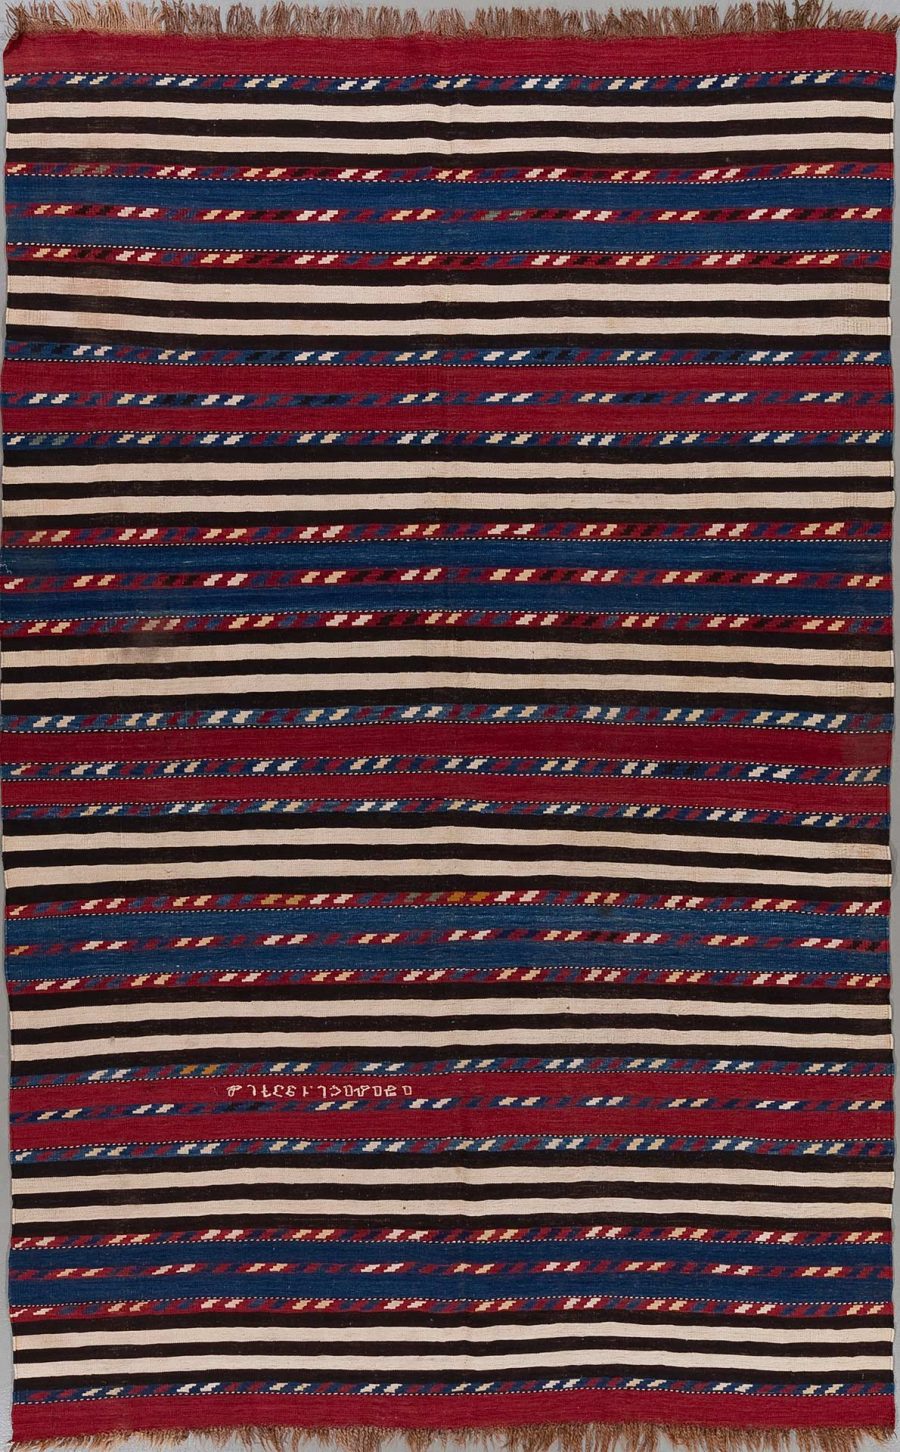 Handgewebter Teppich mit horizontalen Streifen in Rot, Blau, Schwarz und Weiß, mit eingewebten Mustern in verschiedenen Farben.